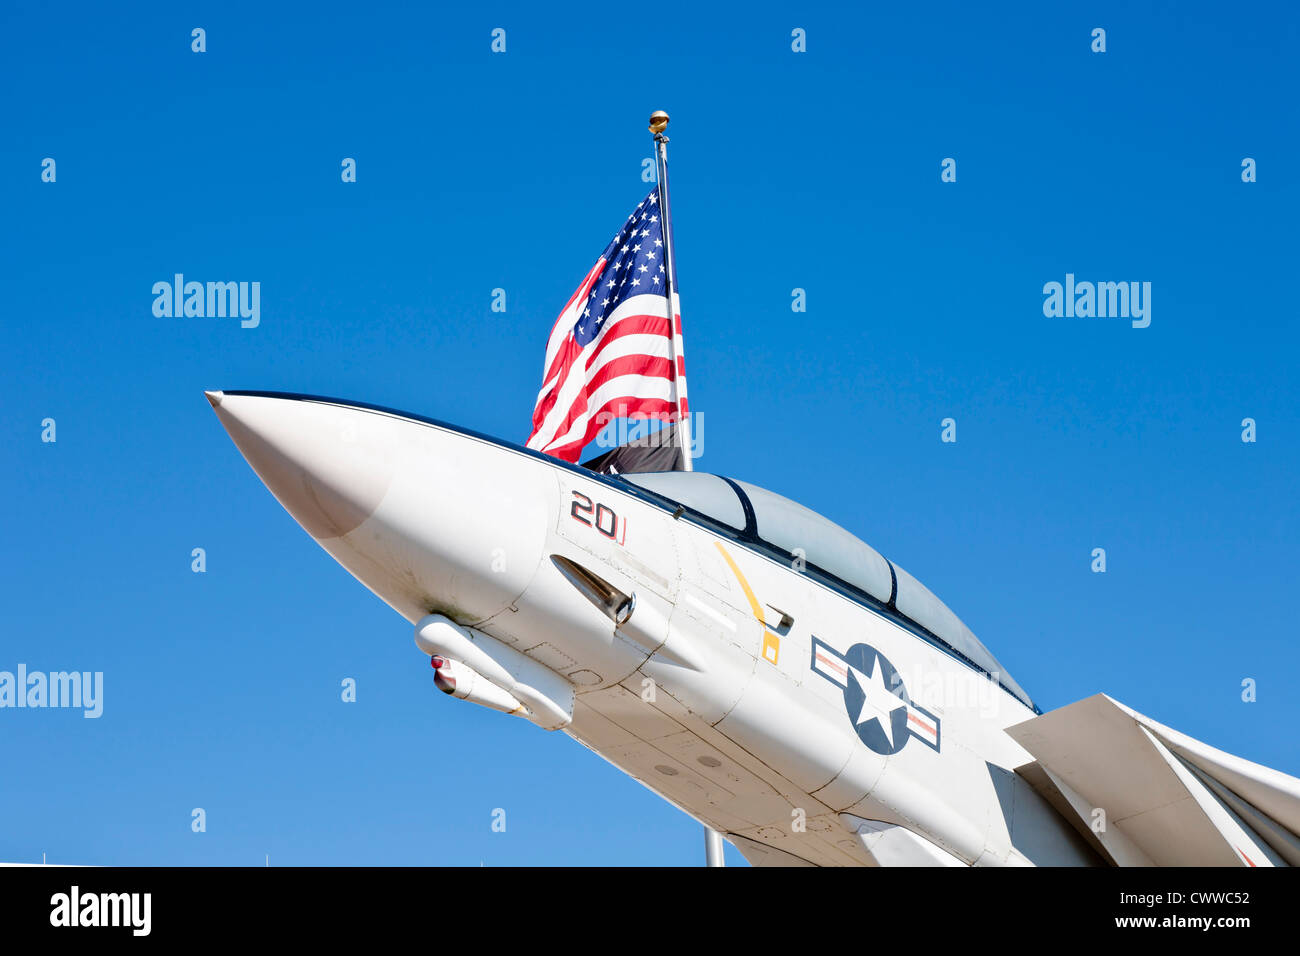 Tomcat navy immagini e fotografie stock ad alta risoluzione - Alamy